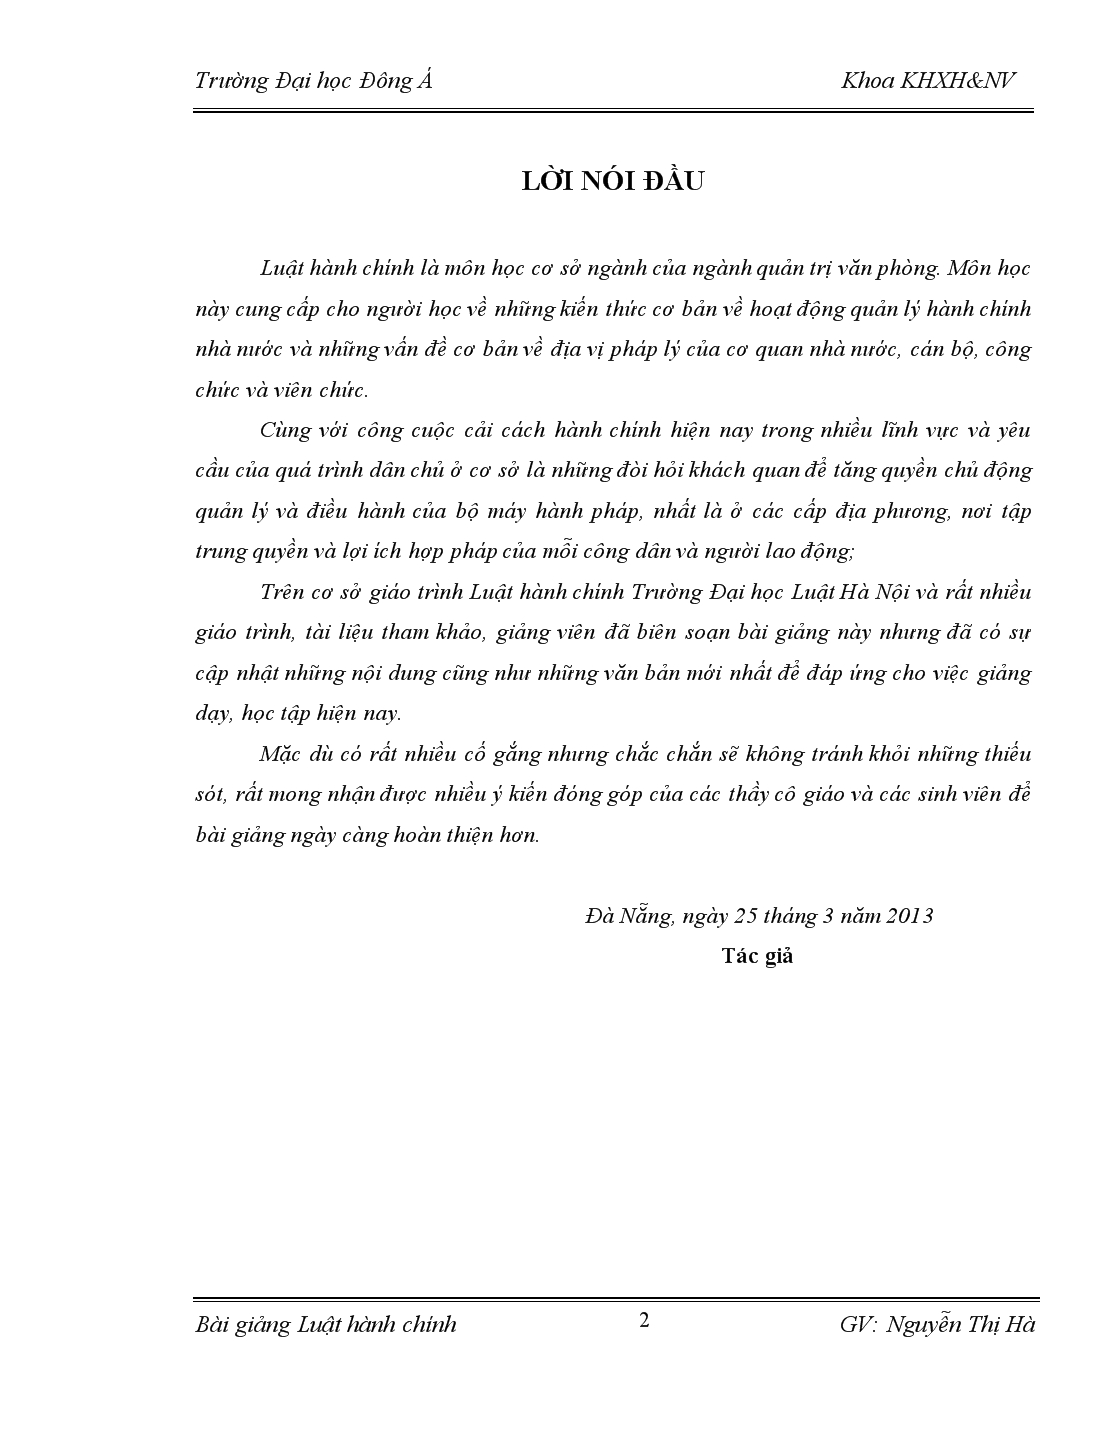 Bài giảng về luật hành chính Việt Nam trang 2